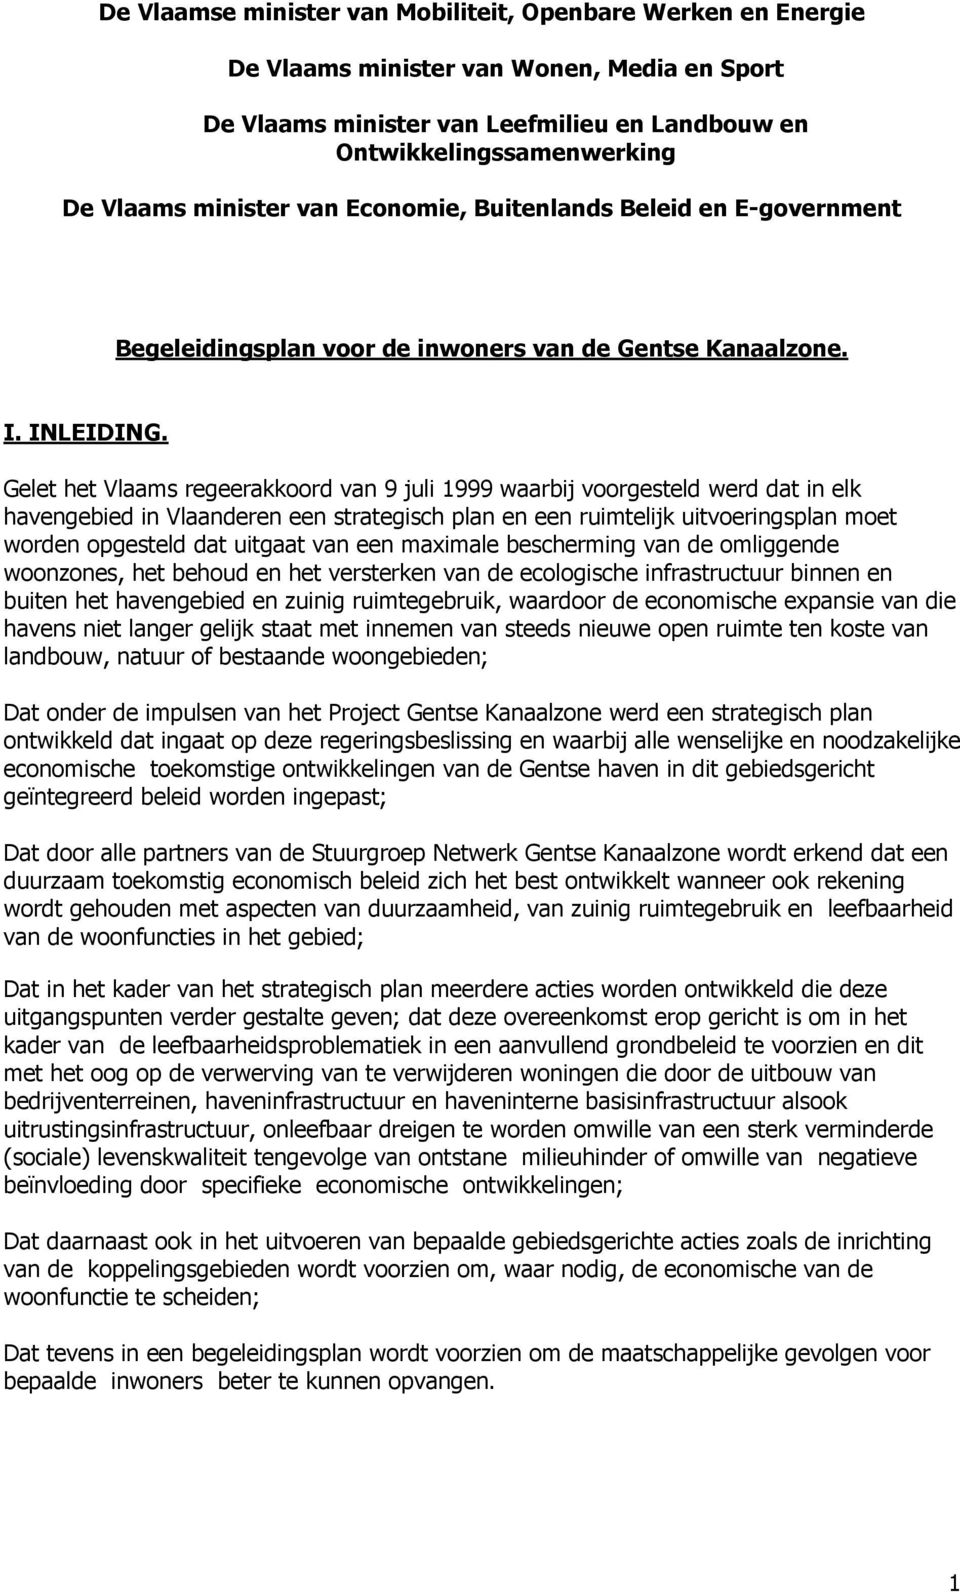 Gelet het Vlaams regeerakkoord van 9 juli 1999 waarbij voorgesteld werd dat in elk havengebied in Vlaanderen een strategisch plan en een ruimtelijk uitvoeringsplan moet worden opgesteld dat uitgaat